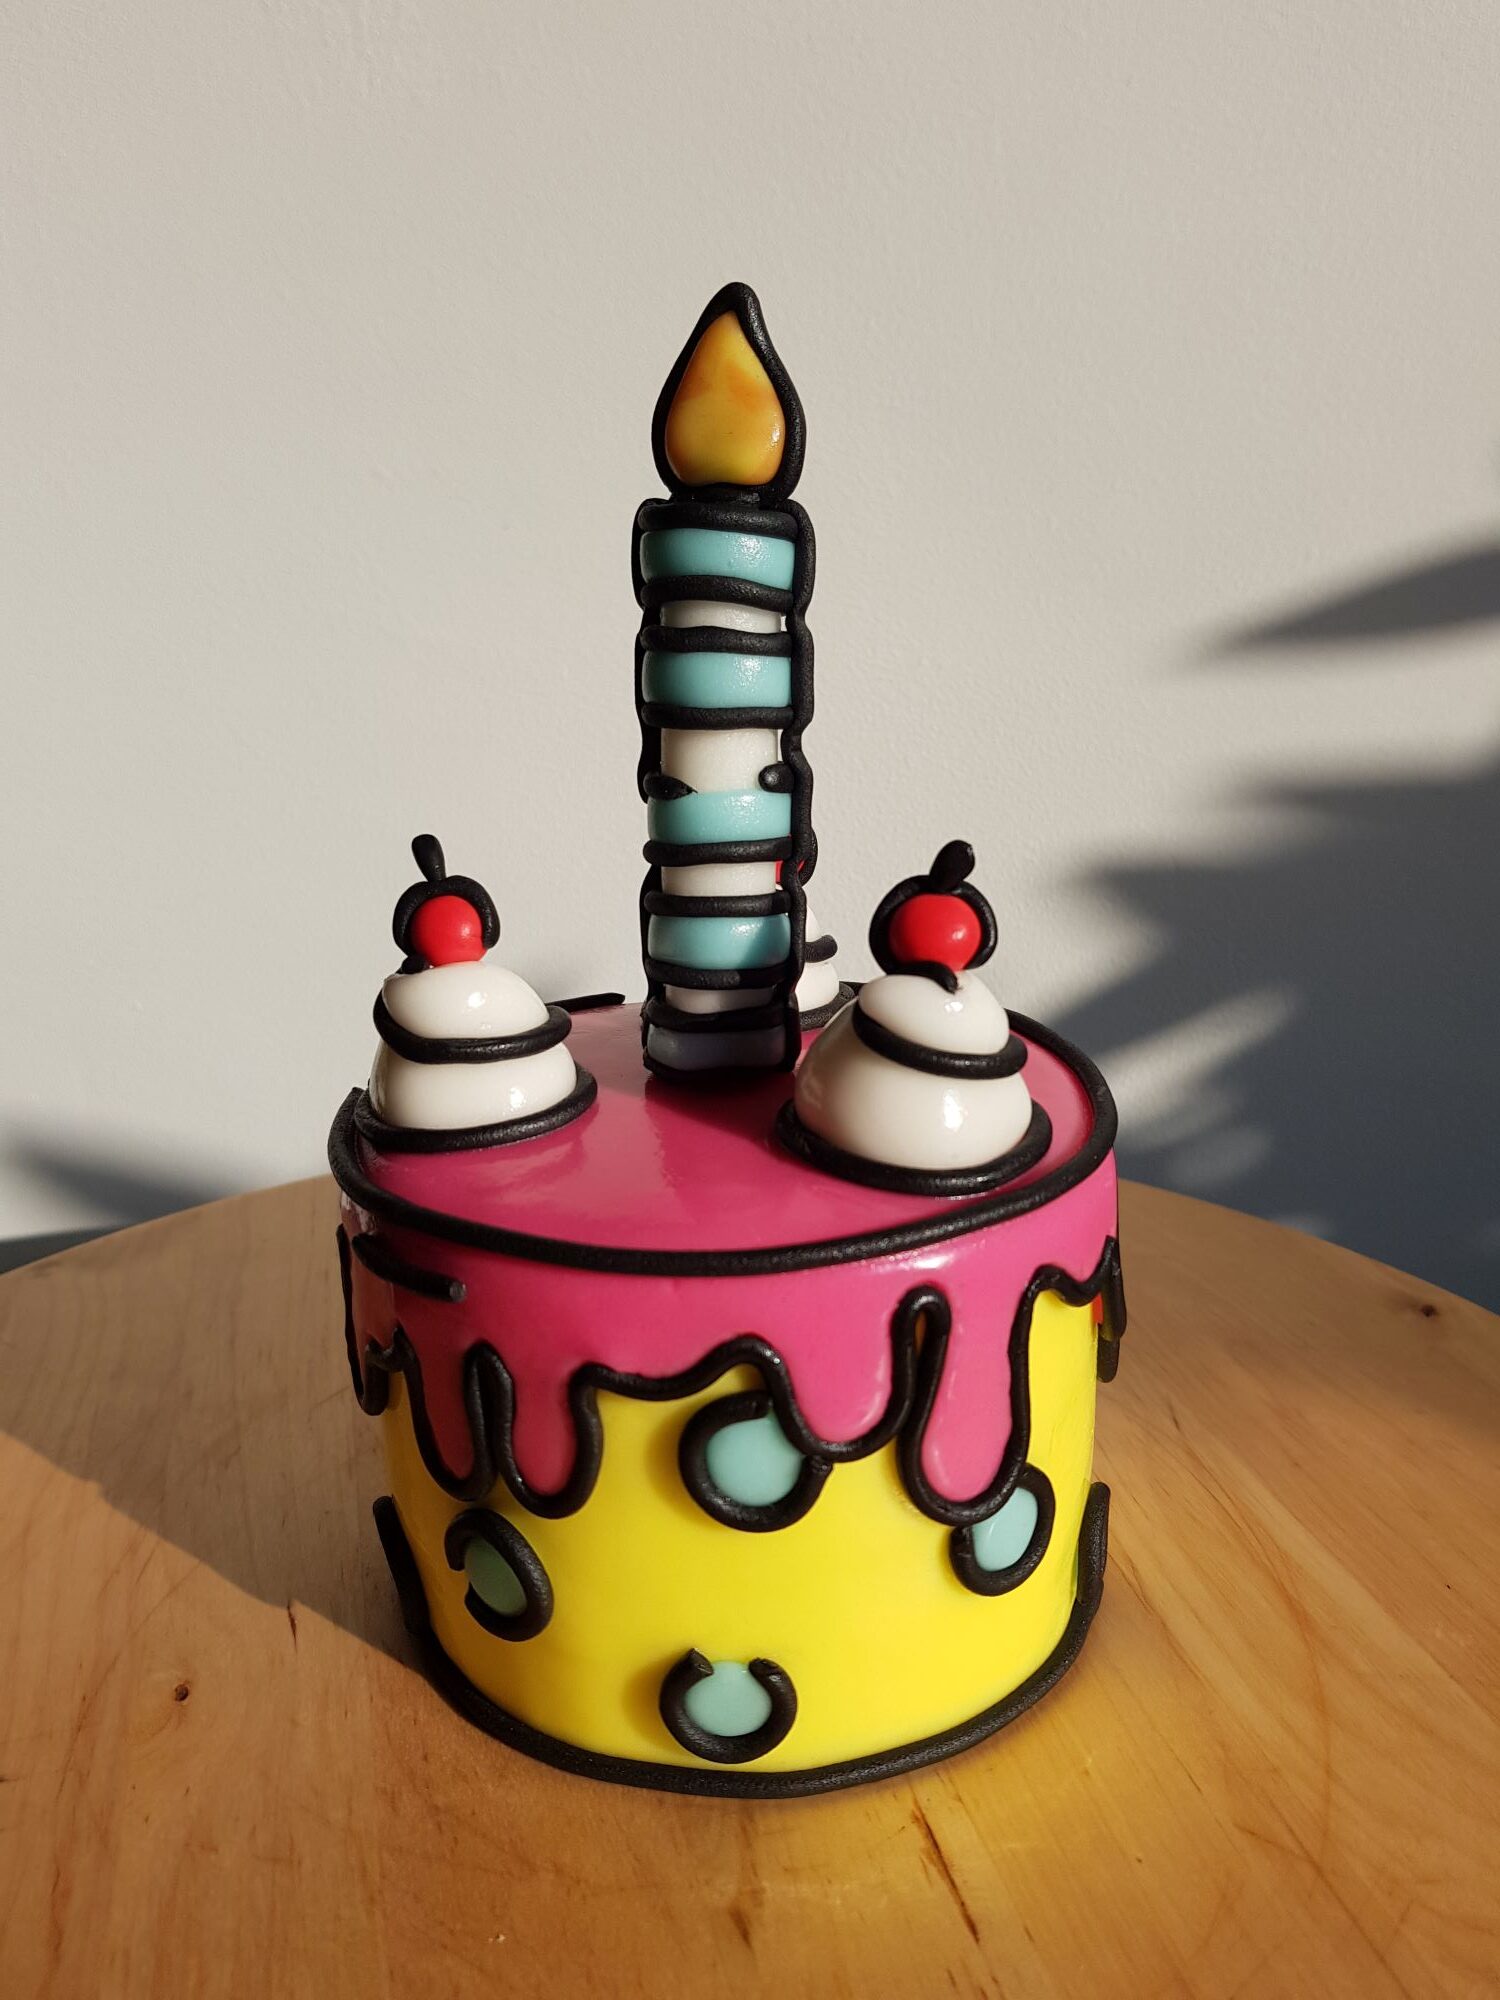 Mini-cartoon cake